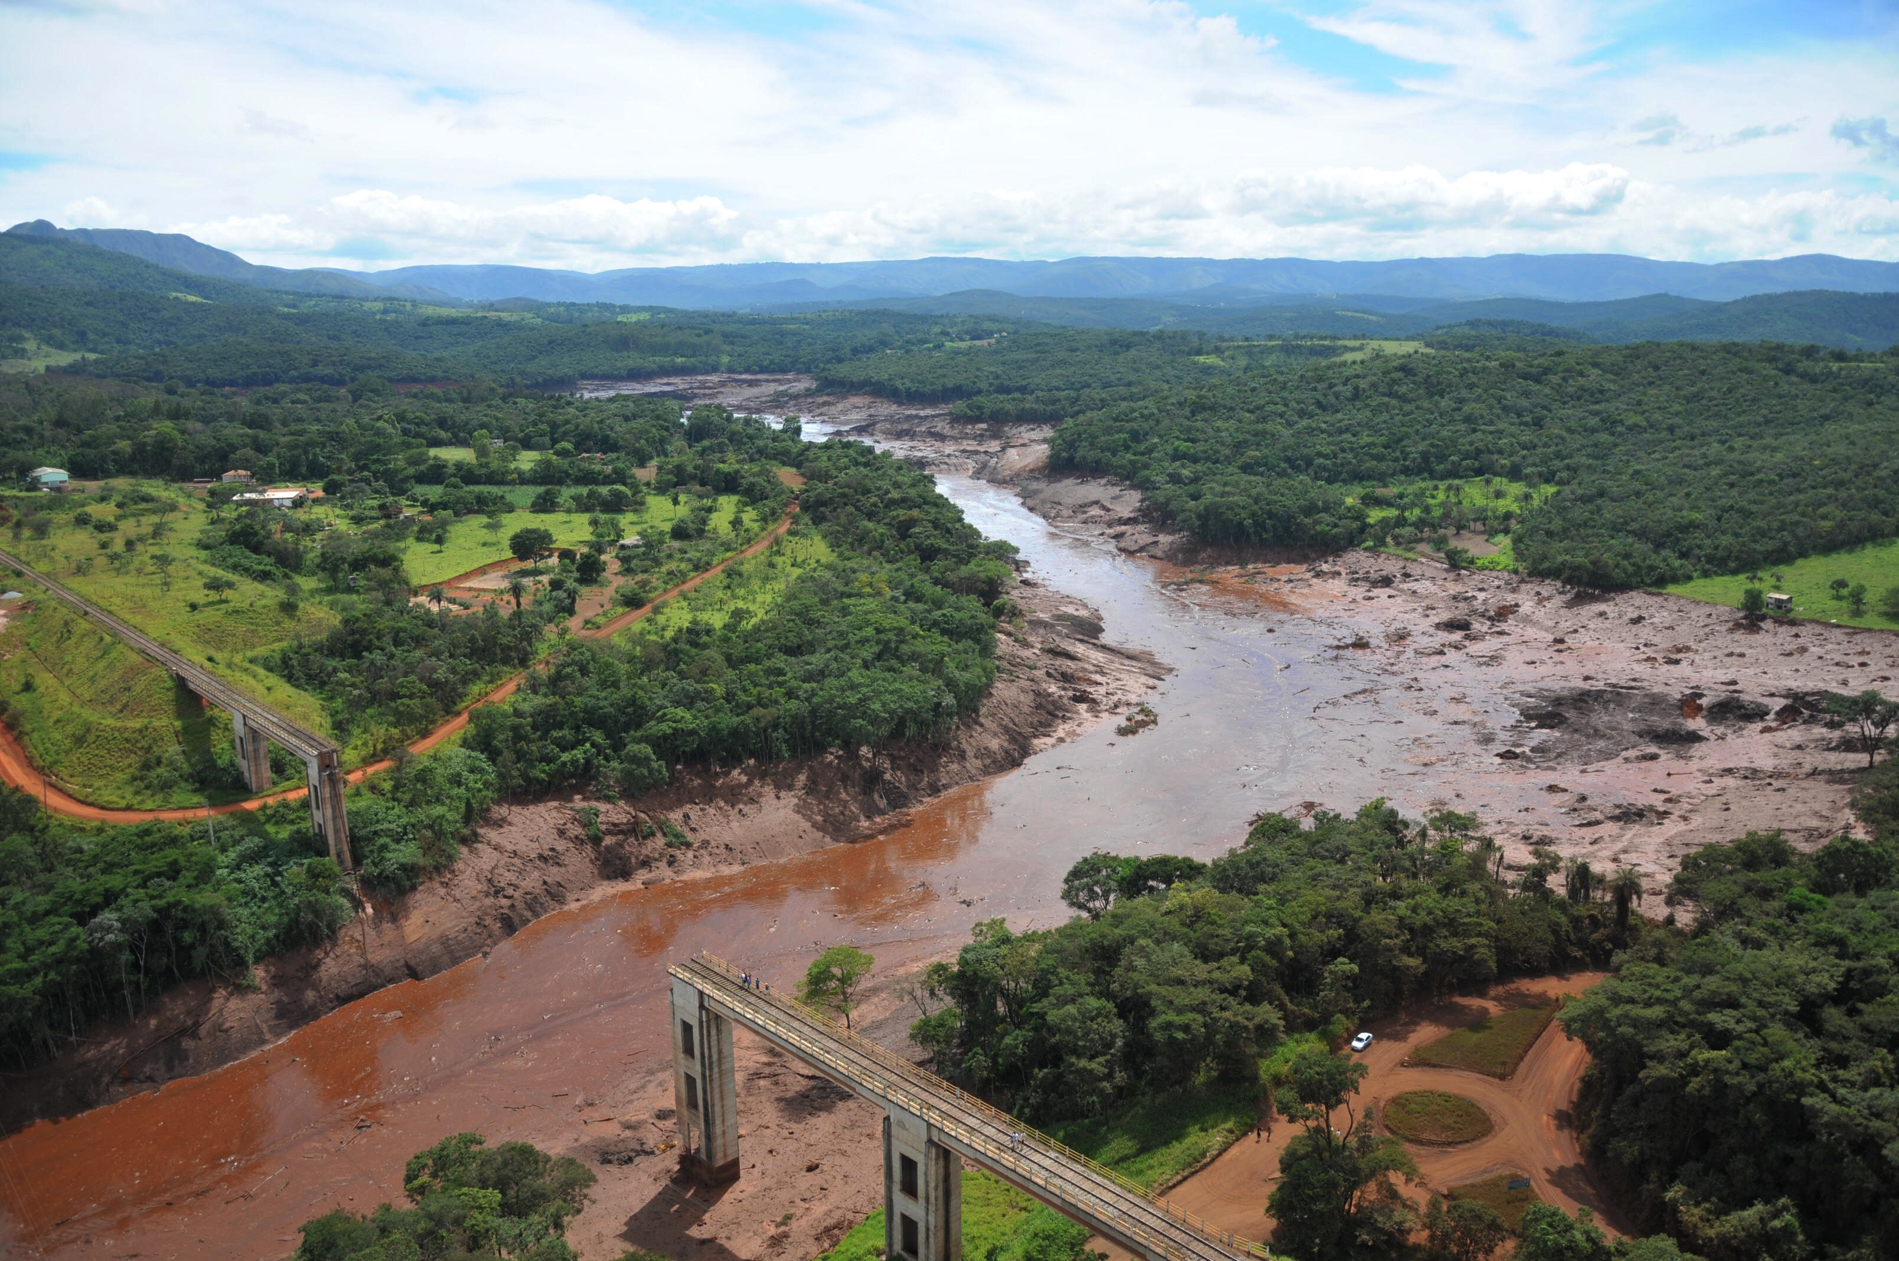 Crise ambiental persiste às margens do Rio Paraopeba, 5 anos após o colapso em Brumadinho